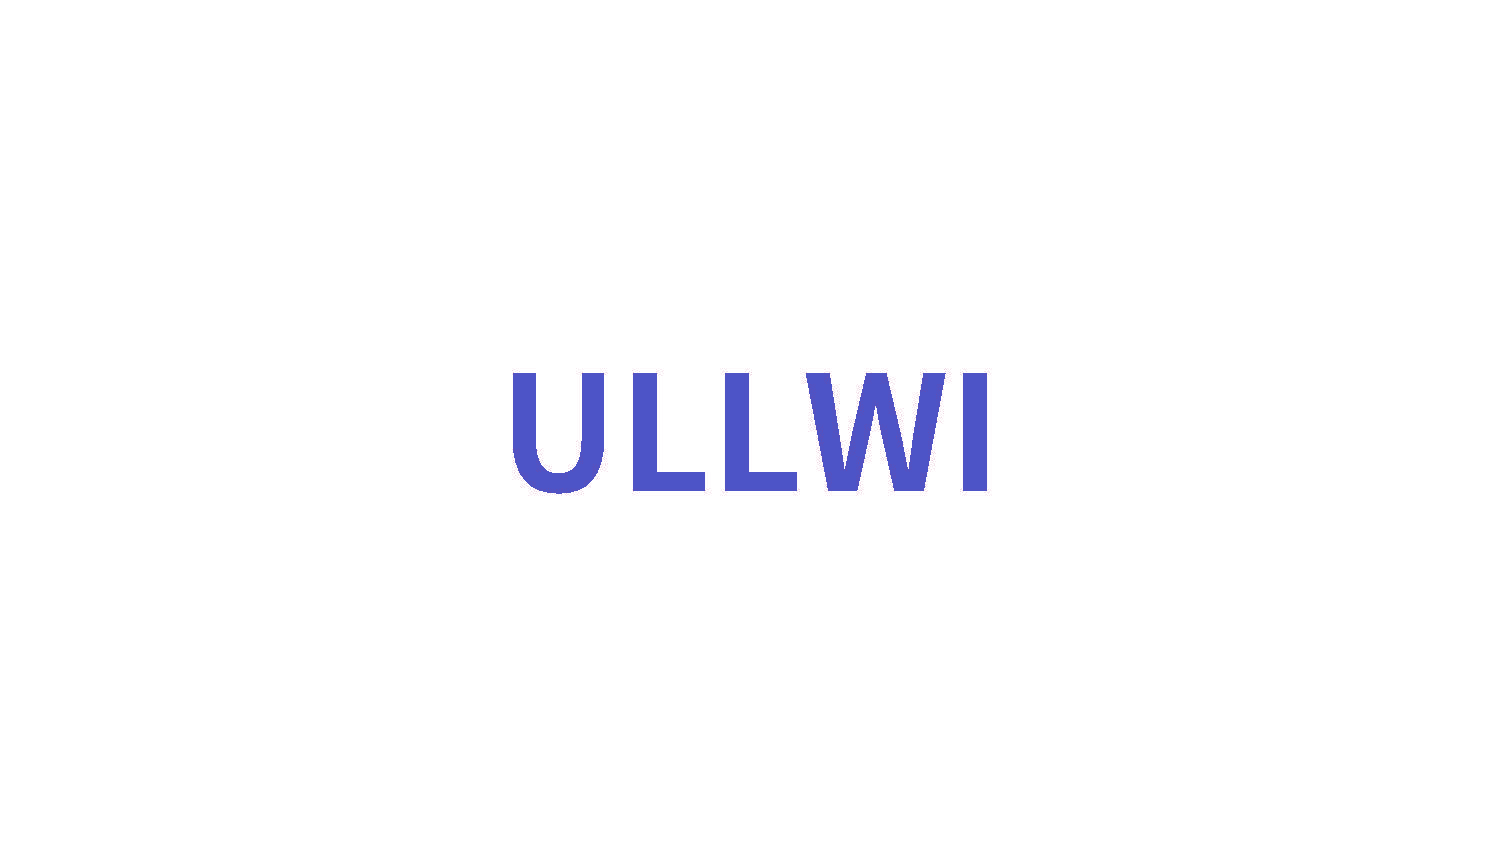 ULLWI